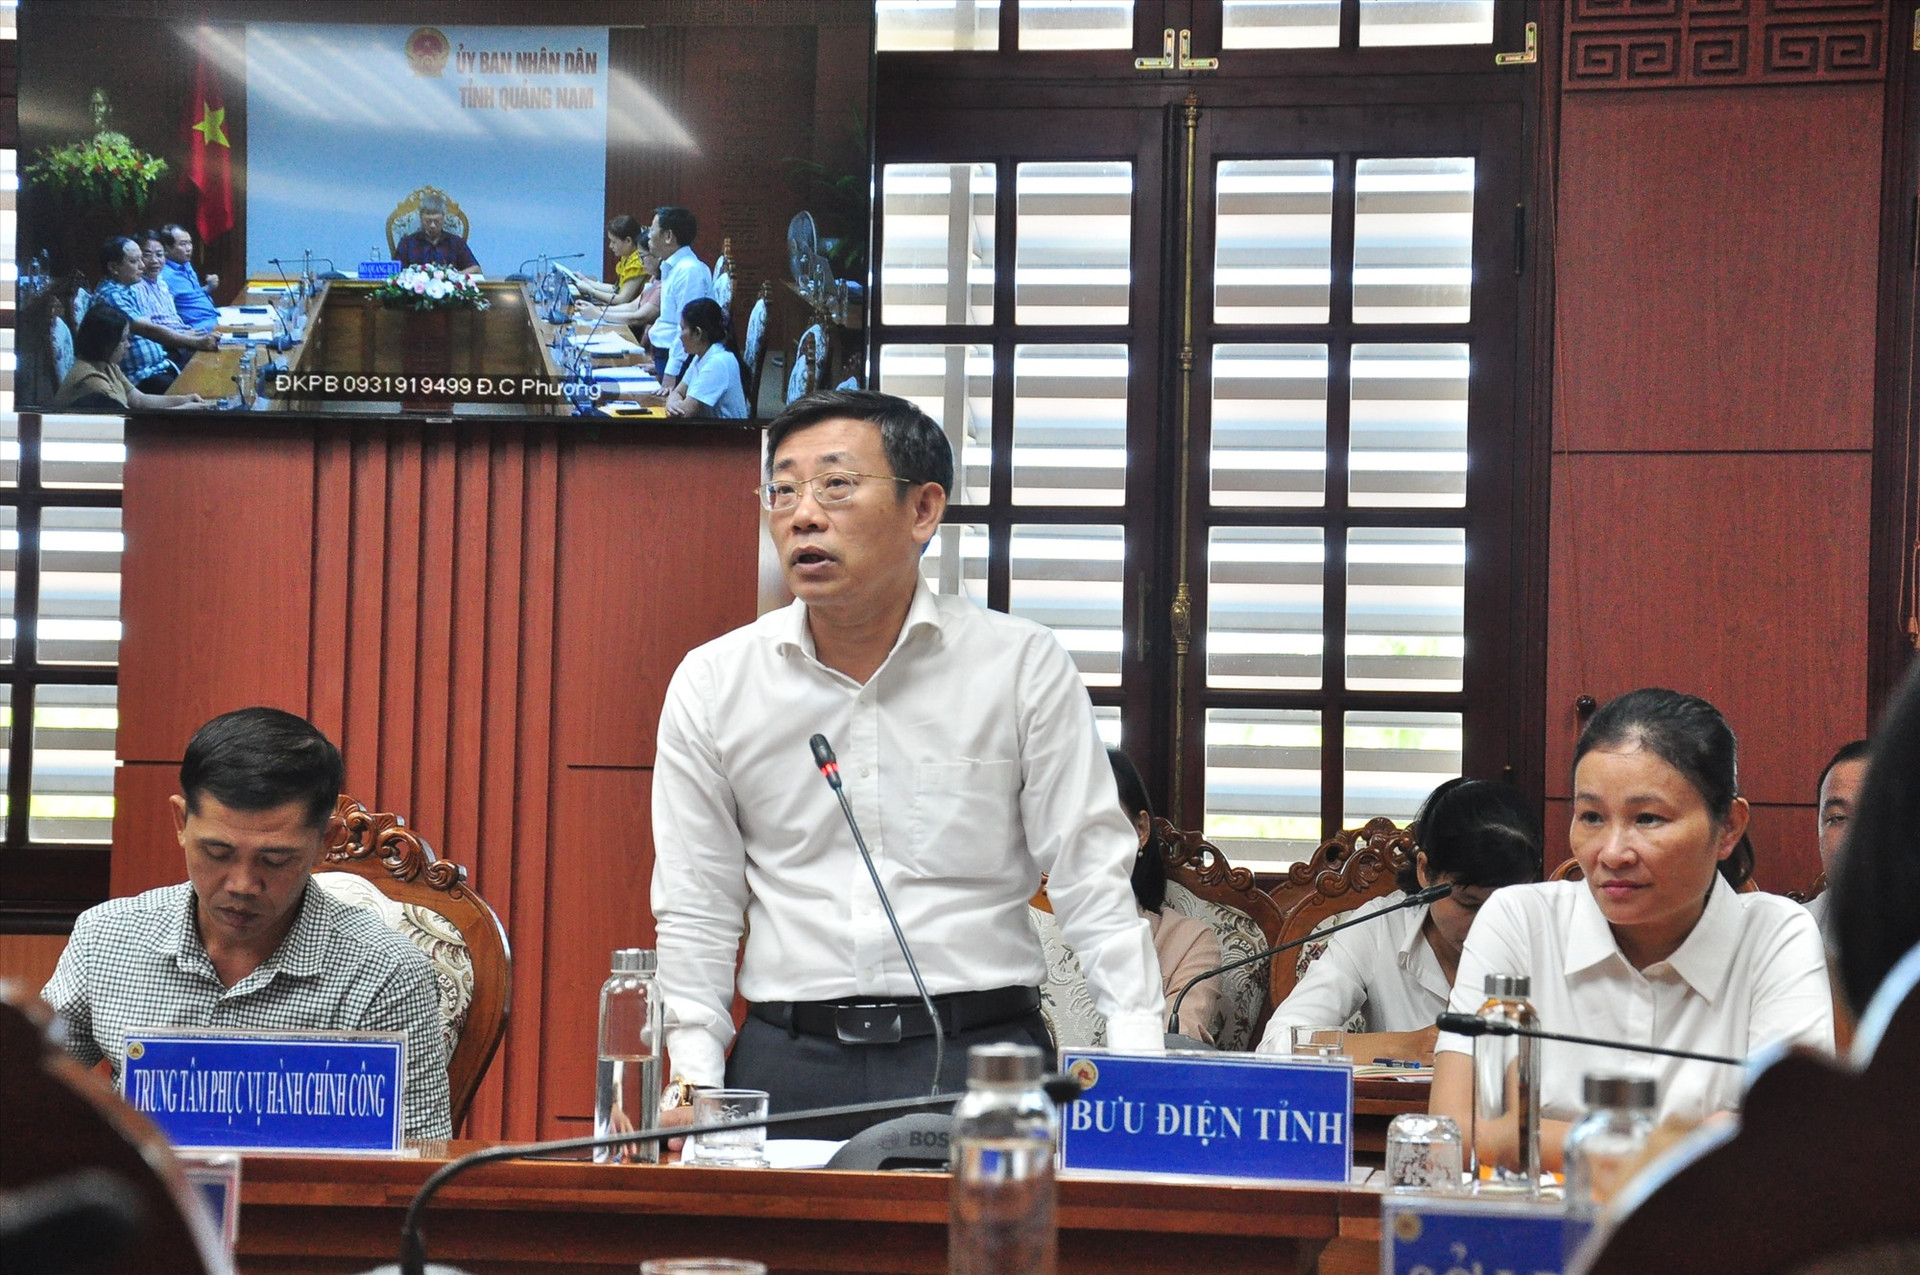 Ông Trần Việt Hùng - Giám đốc Bưu điện tỉnh Quảng Nam phát biểu tại hội nghị. Ảnh: V.A